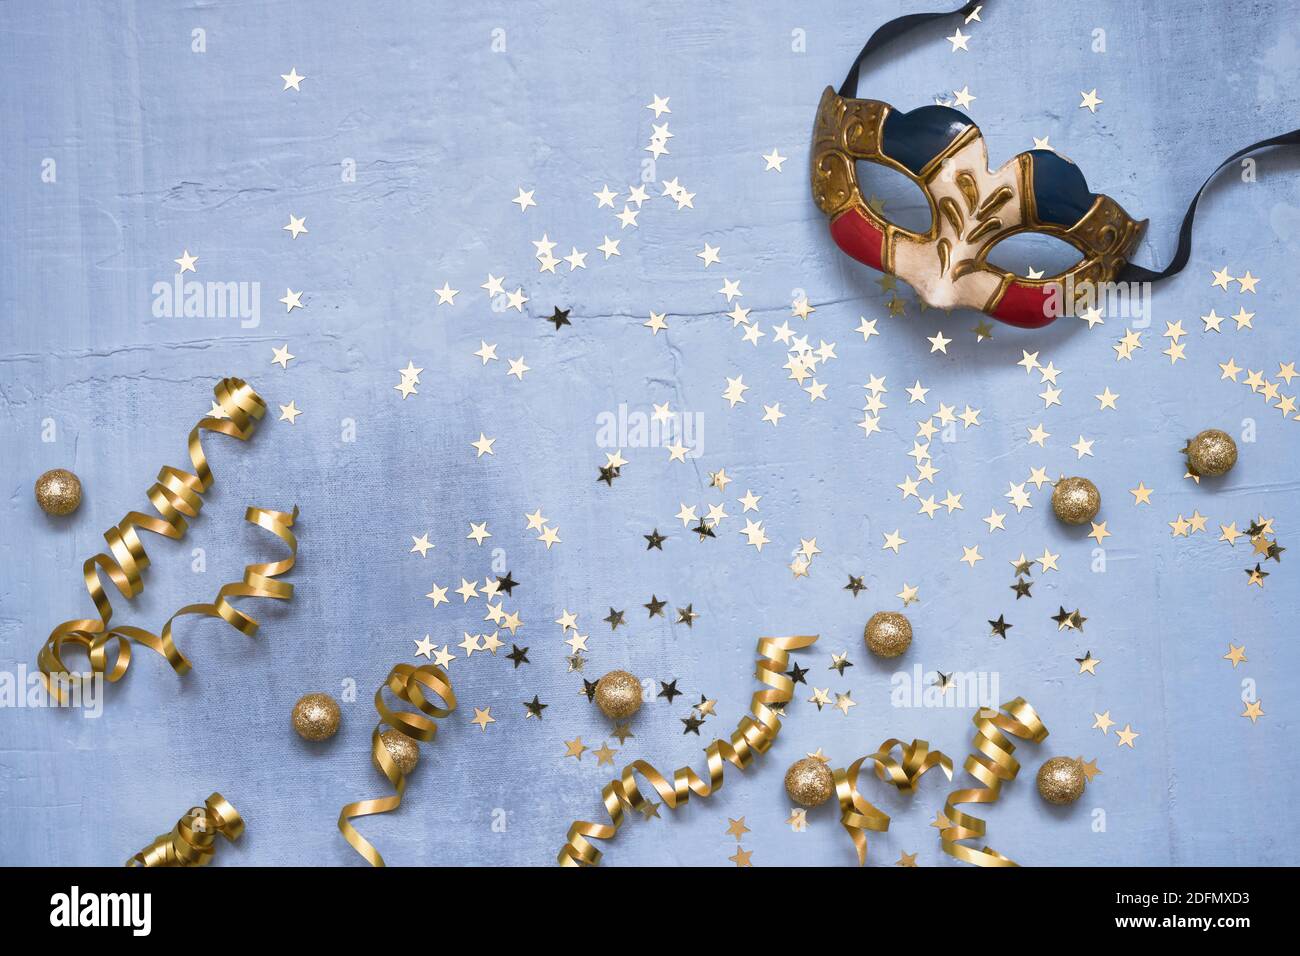 Venezianische Karnevalsmaske, Konfetti-Sterne und Party-Streamer auf blauem Hintergrund. Flaches Lay von Weihnachten, Jubiläum, Karneval, Neujahrsfeier con Stockfoto